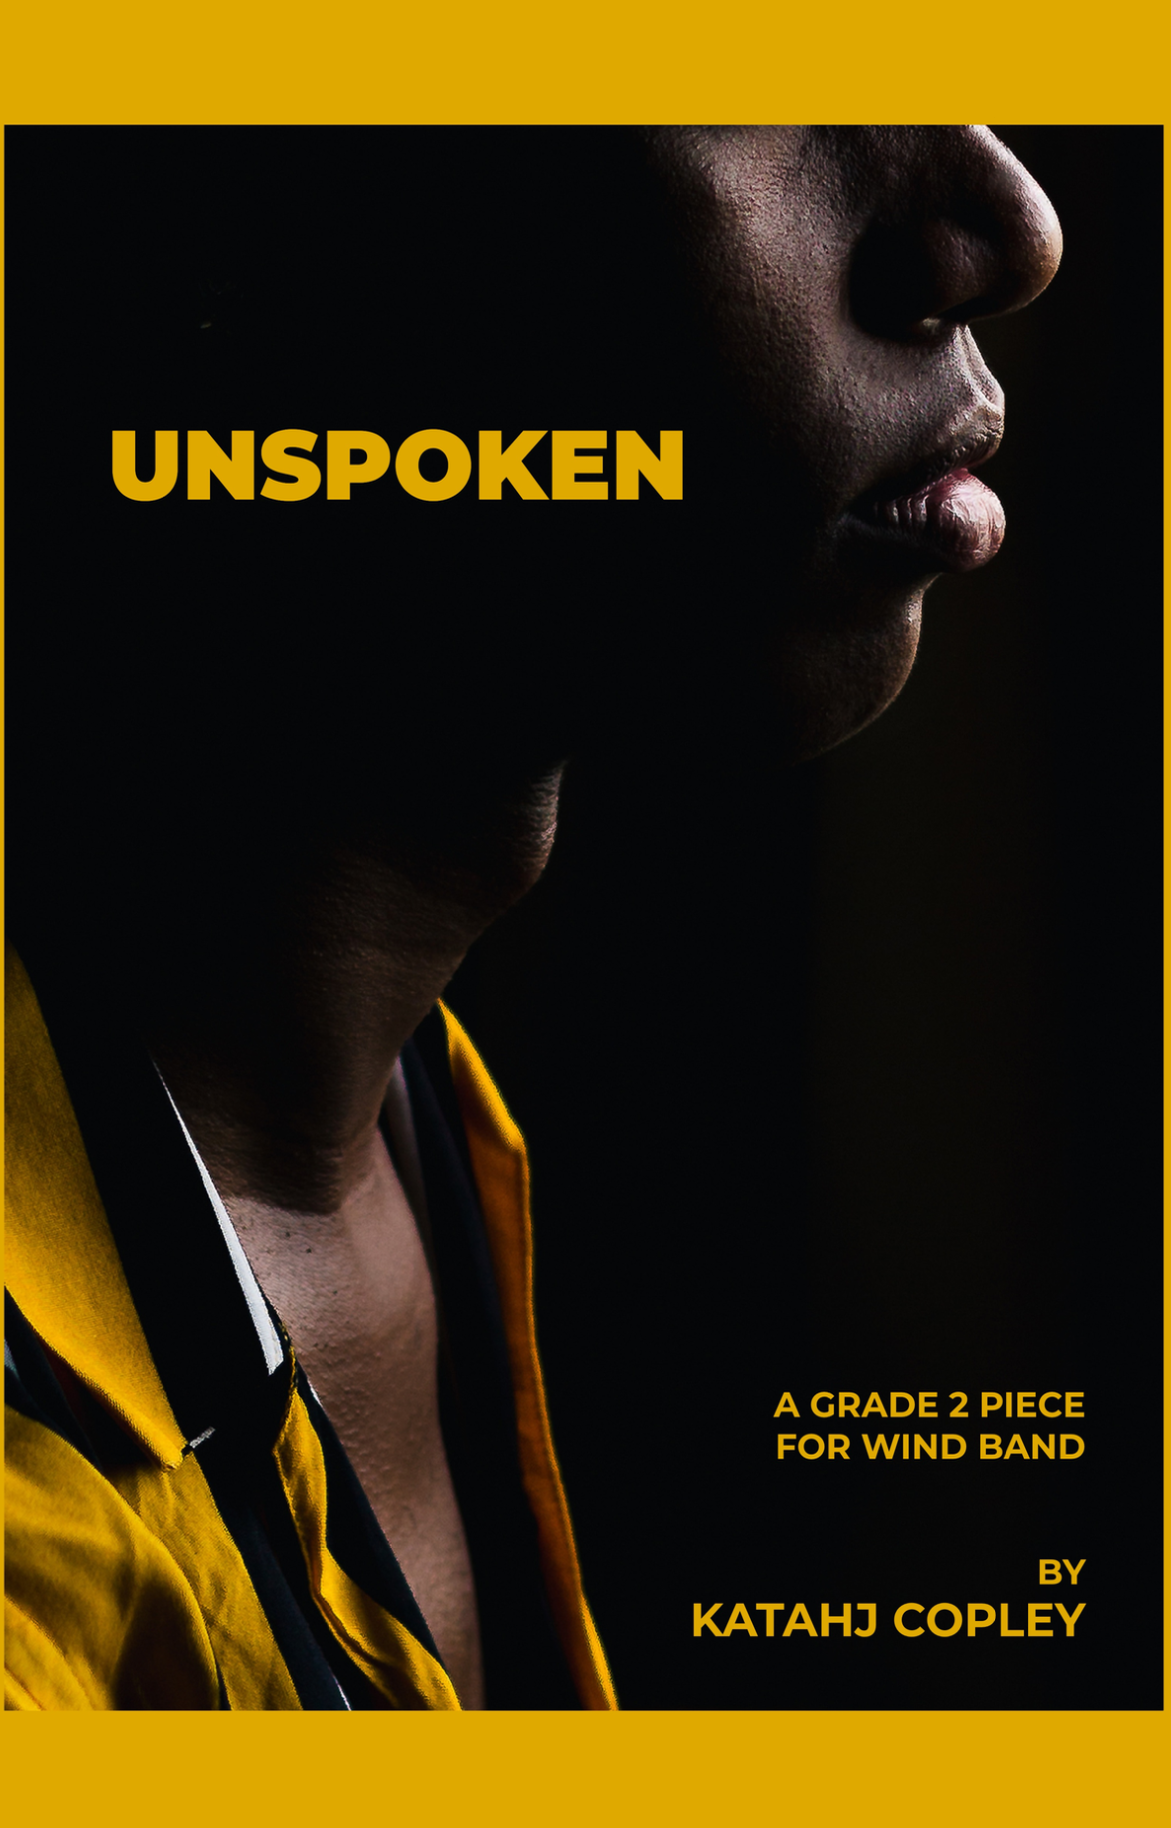 Unspoken (Score Only) by Katahj Copley